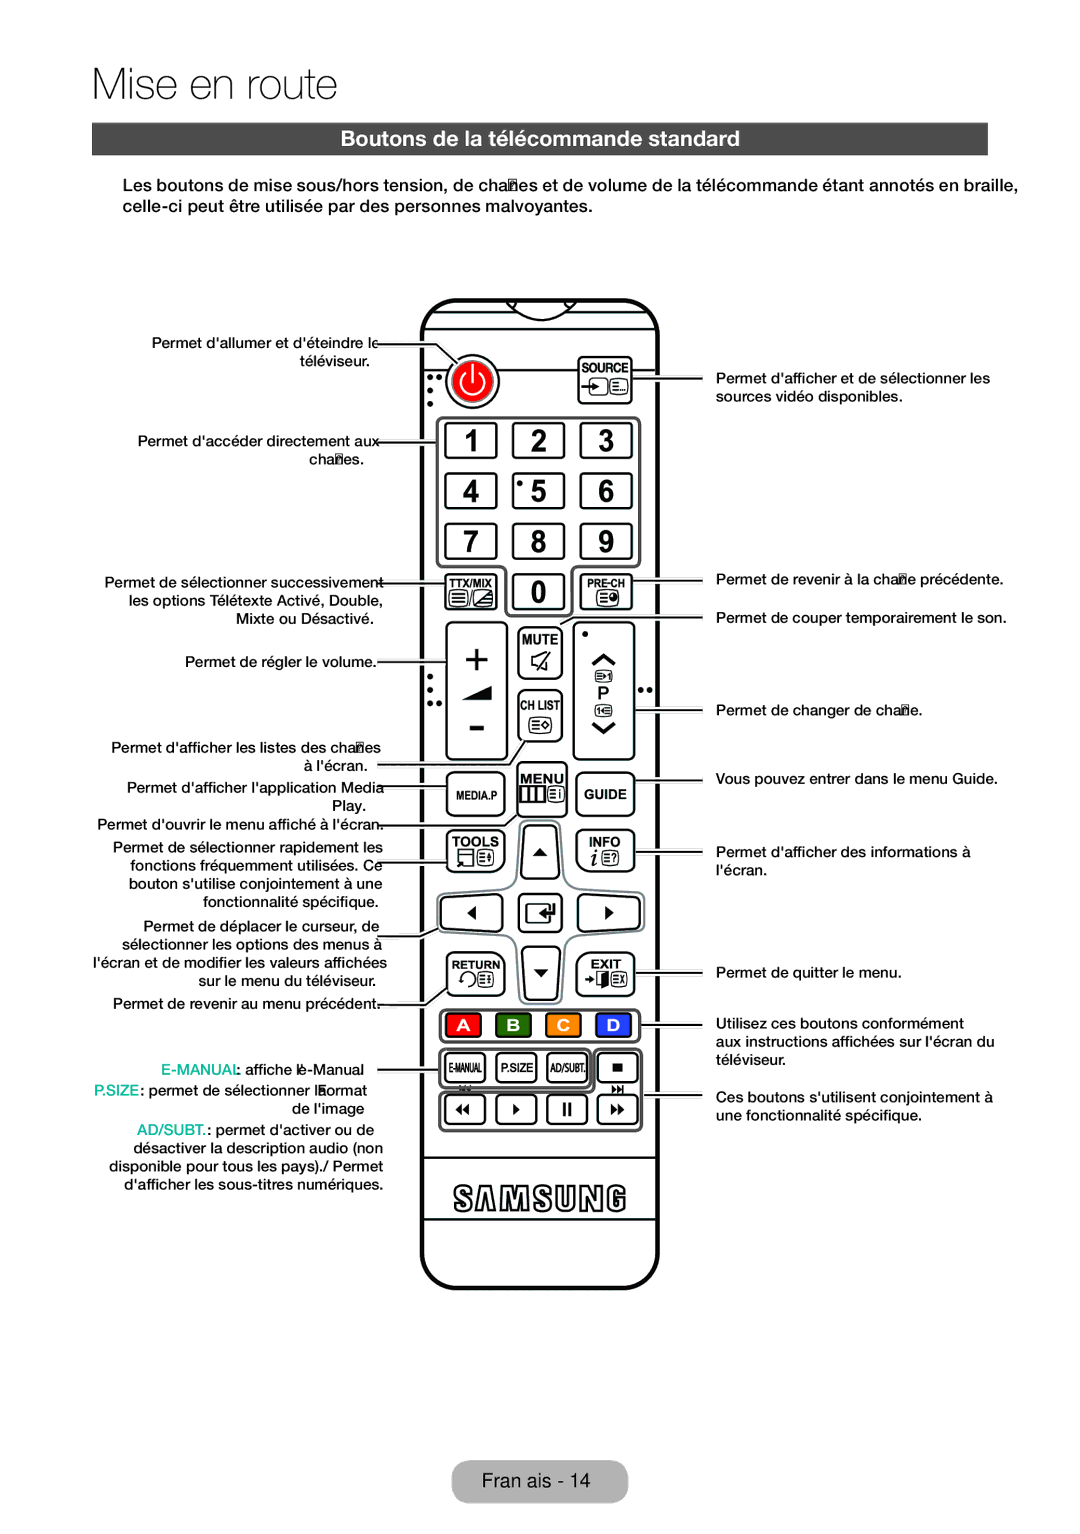 Samsung LT32E310EXQ/EN, LT32E310EW/EN, LT28E310EW/EN manual Boutons de la télécommande standard, Manual affiche le-Manual 